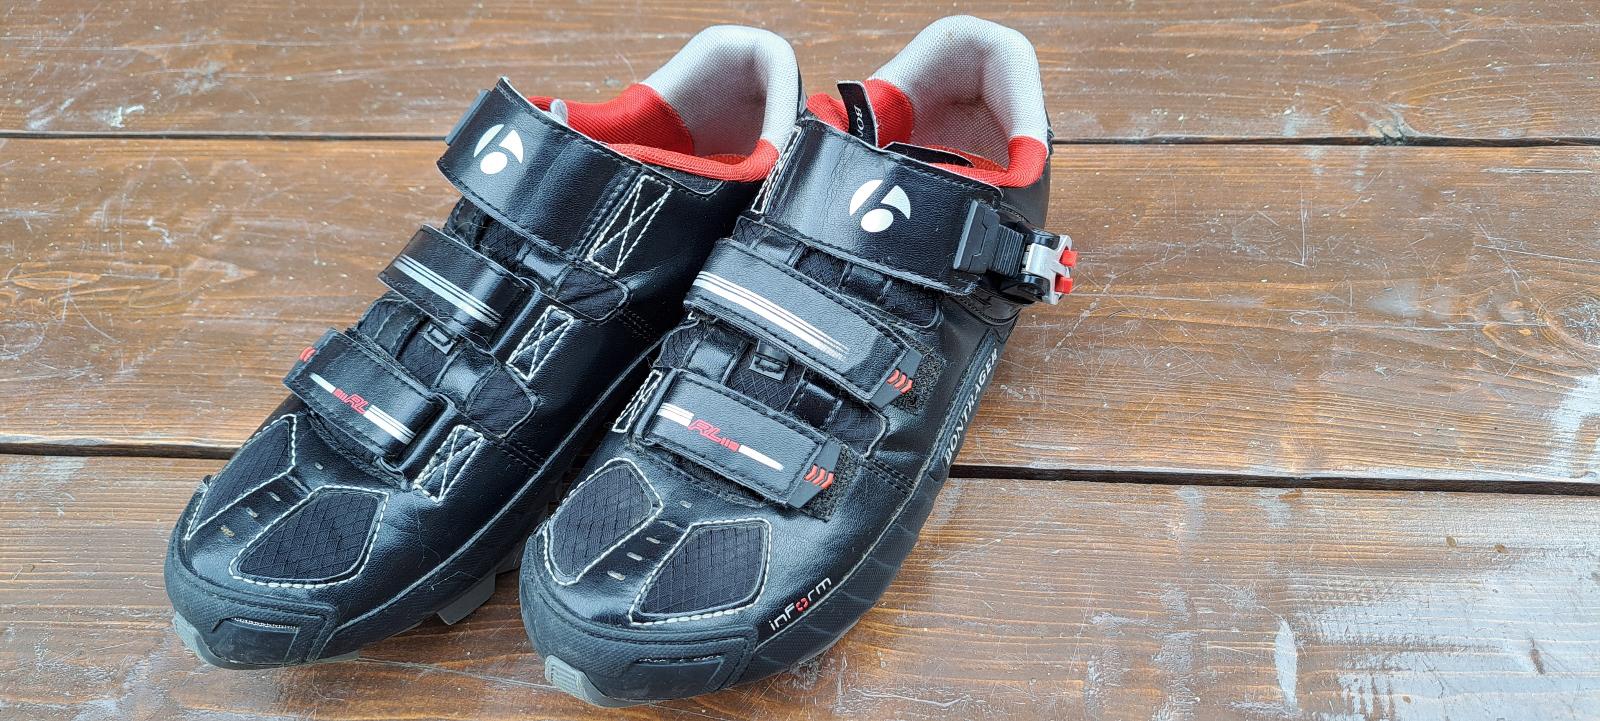 Pánska cyklistická obuv Bontrager Inform + pedále shimano - Šport a turistika